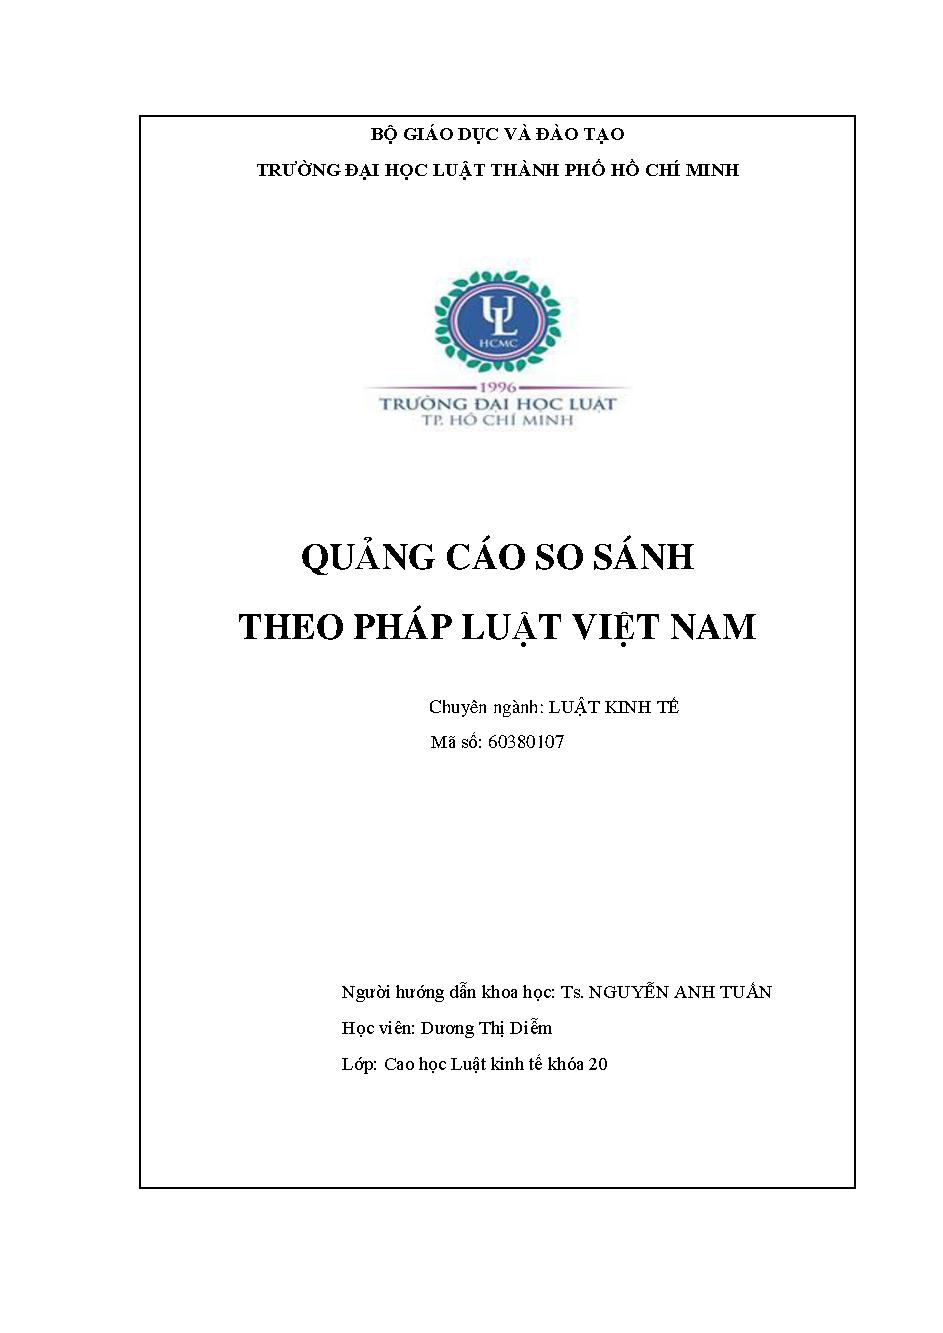 Quảng cáo so sánh trong pháp luật cạnh tranh Việt Nam thực trạng và hướng hoàn thiện